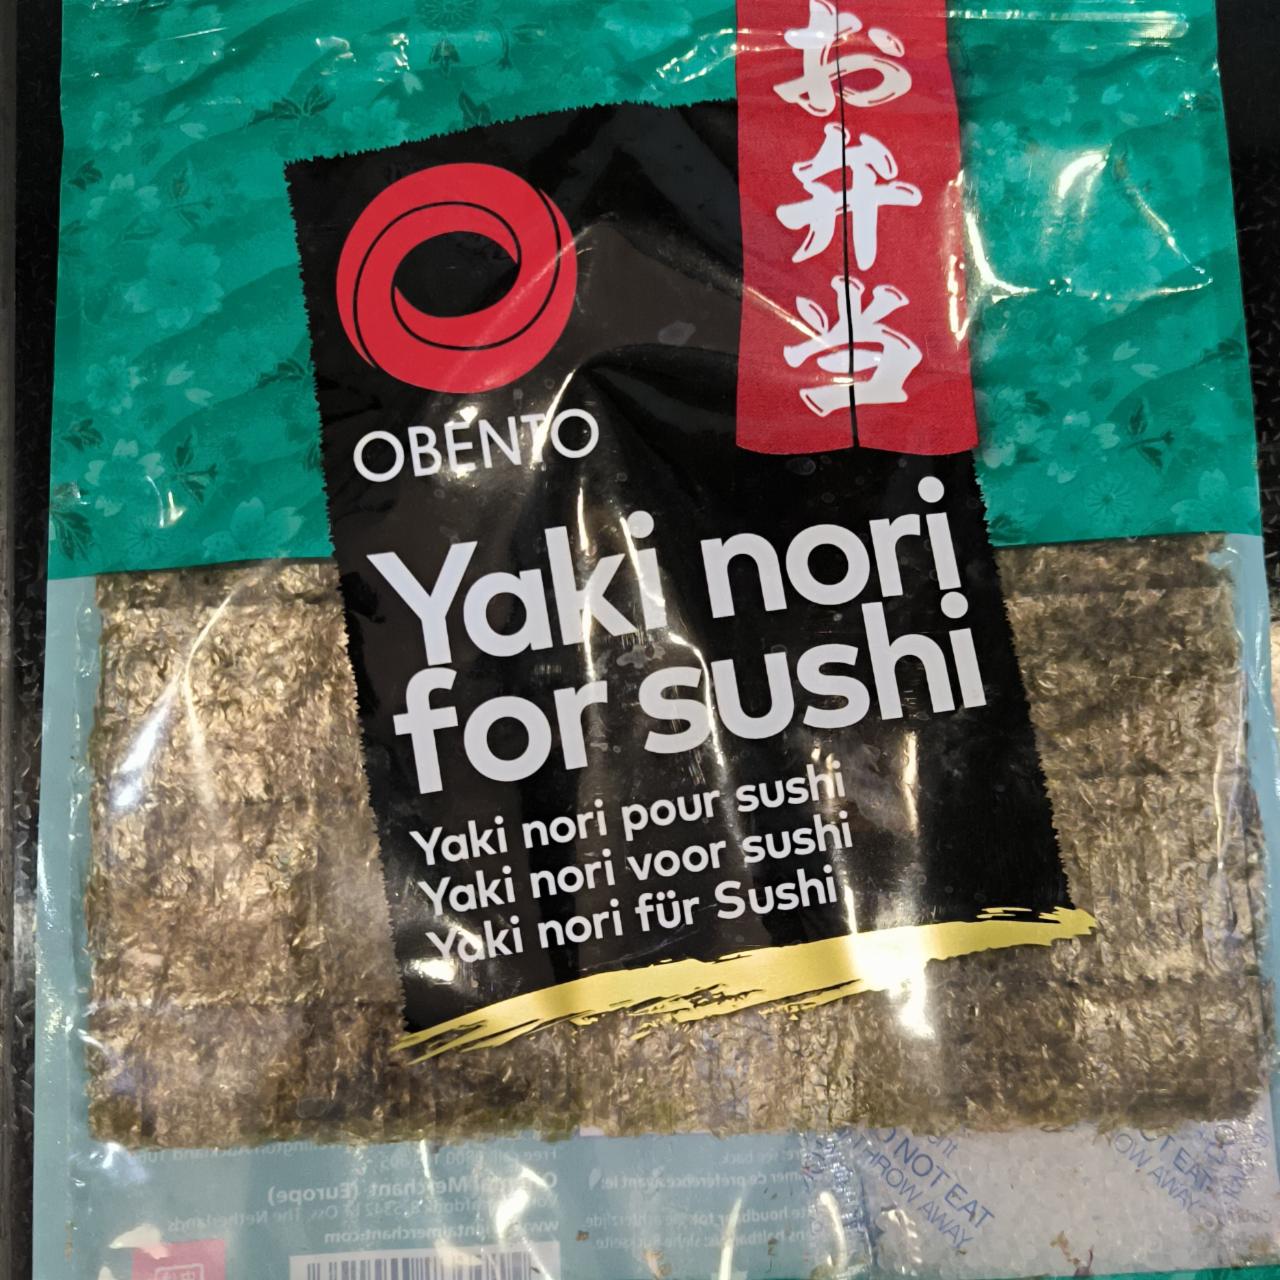 Fotografie - Yaki nori for sushi Obento